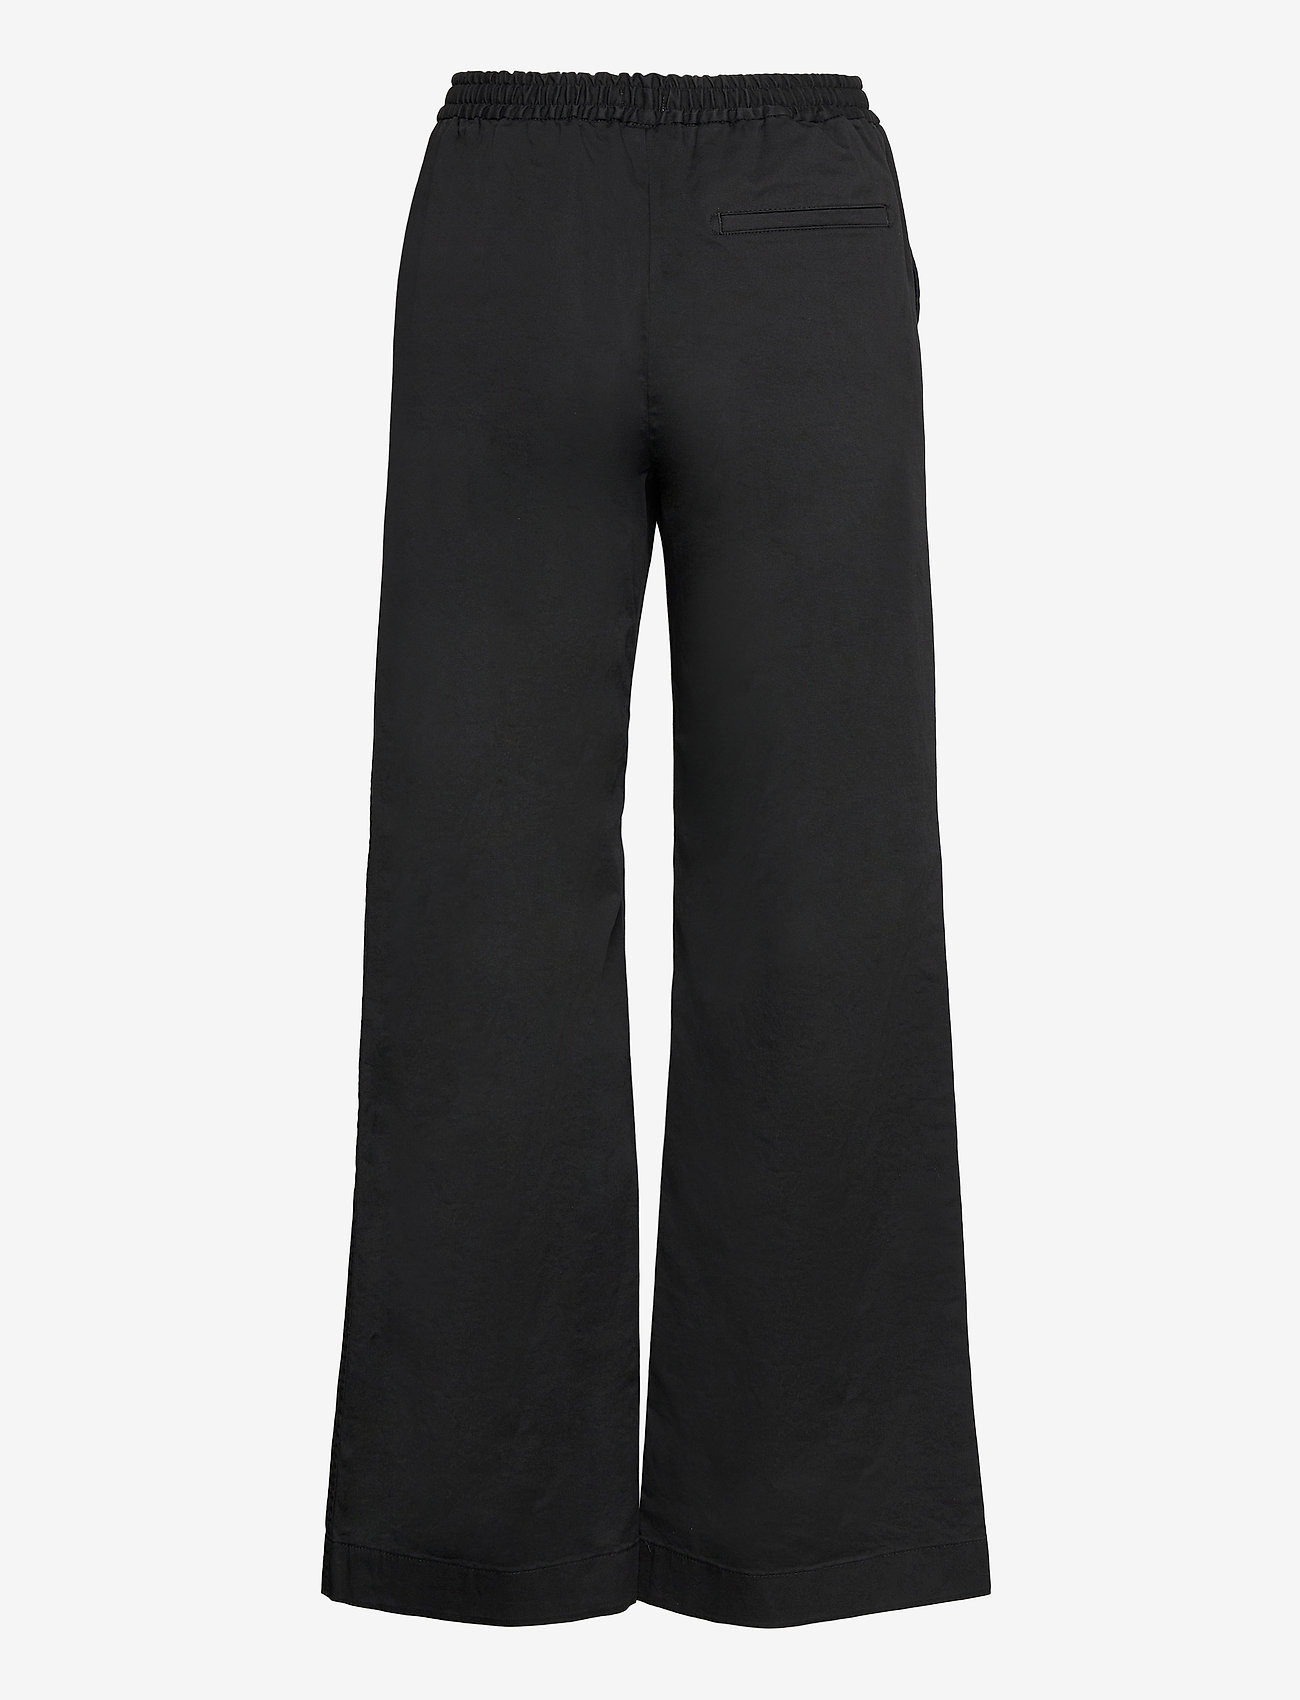 Filippa K - Gillian Trouser - laia säärega püksid - black - 1